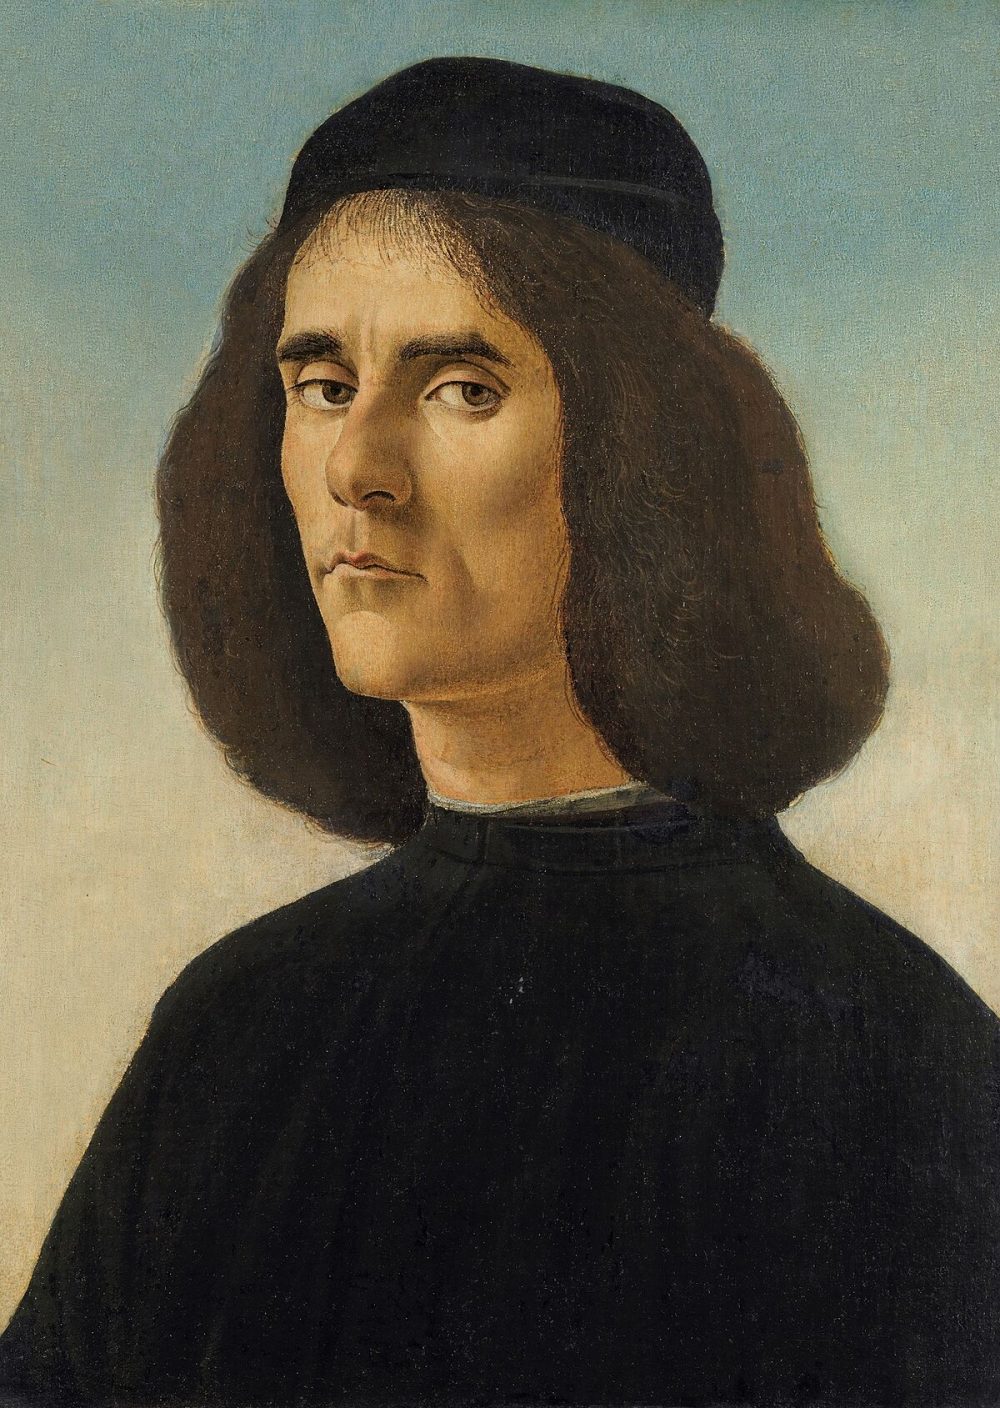 El Museo de Bellas Artes de València exhibirá el retrato que Sandro Botticelli pintó de Michele Marullo Tarcaniota